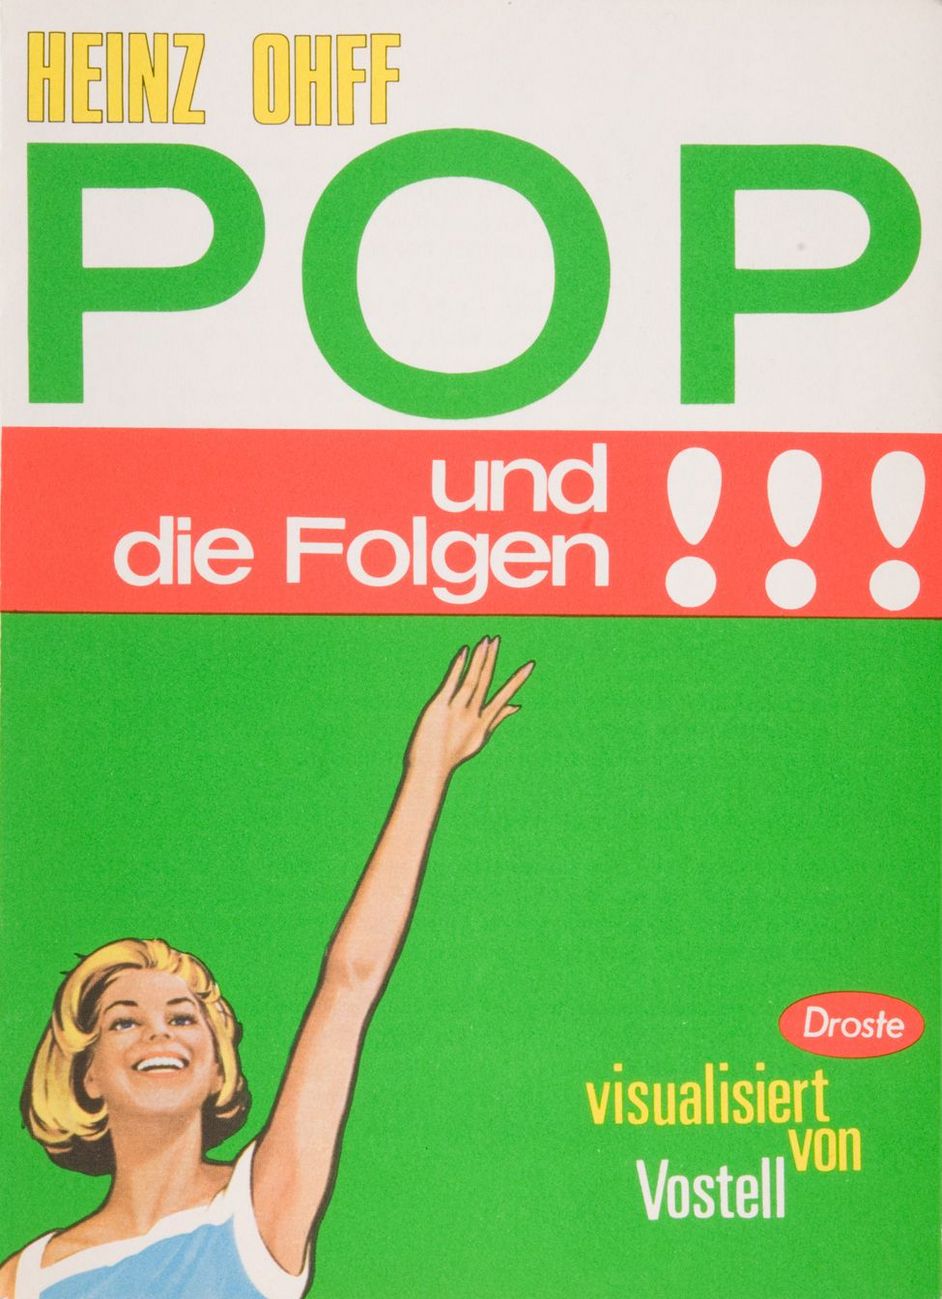 Buch-Cover: Heinz Ohff, Pop und die Folgen!!!, Visualisiert von Wolf Vostell, 1968 aus dem Heinz-Ohff-Archiv 